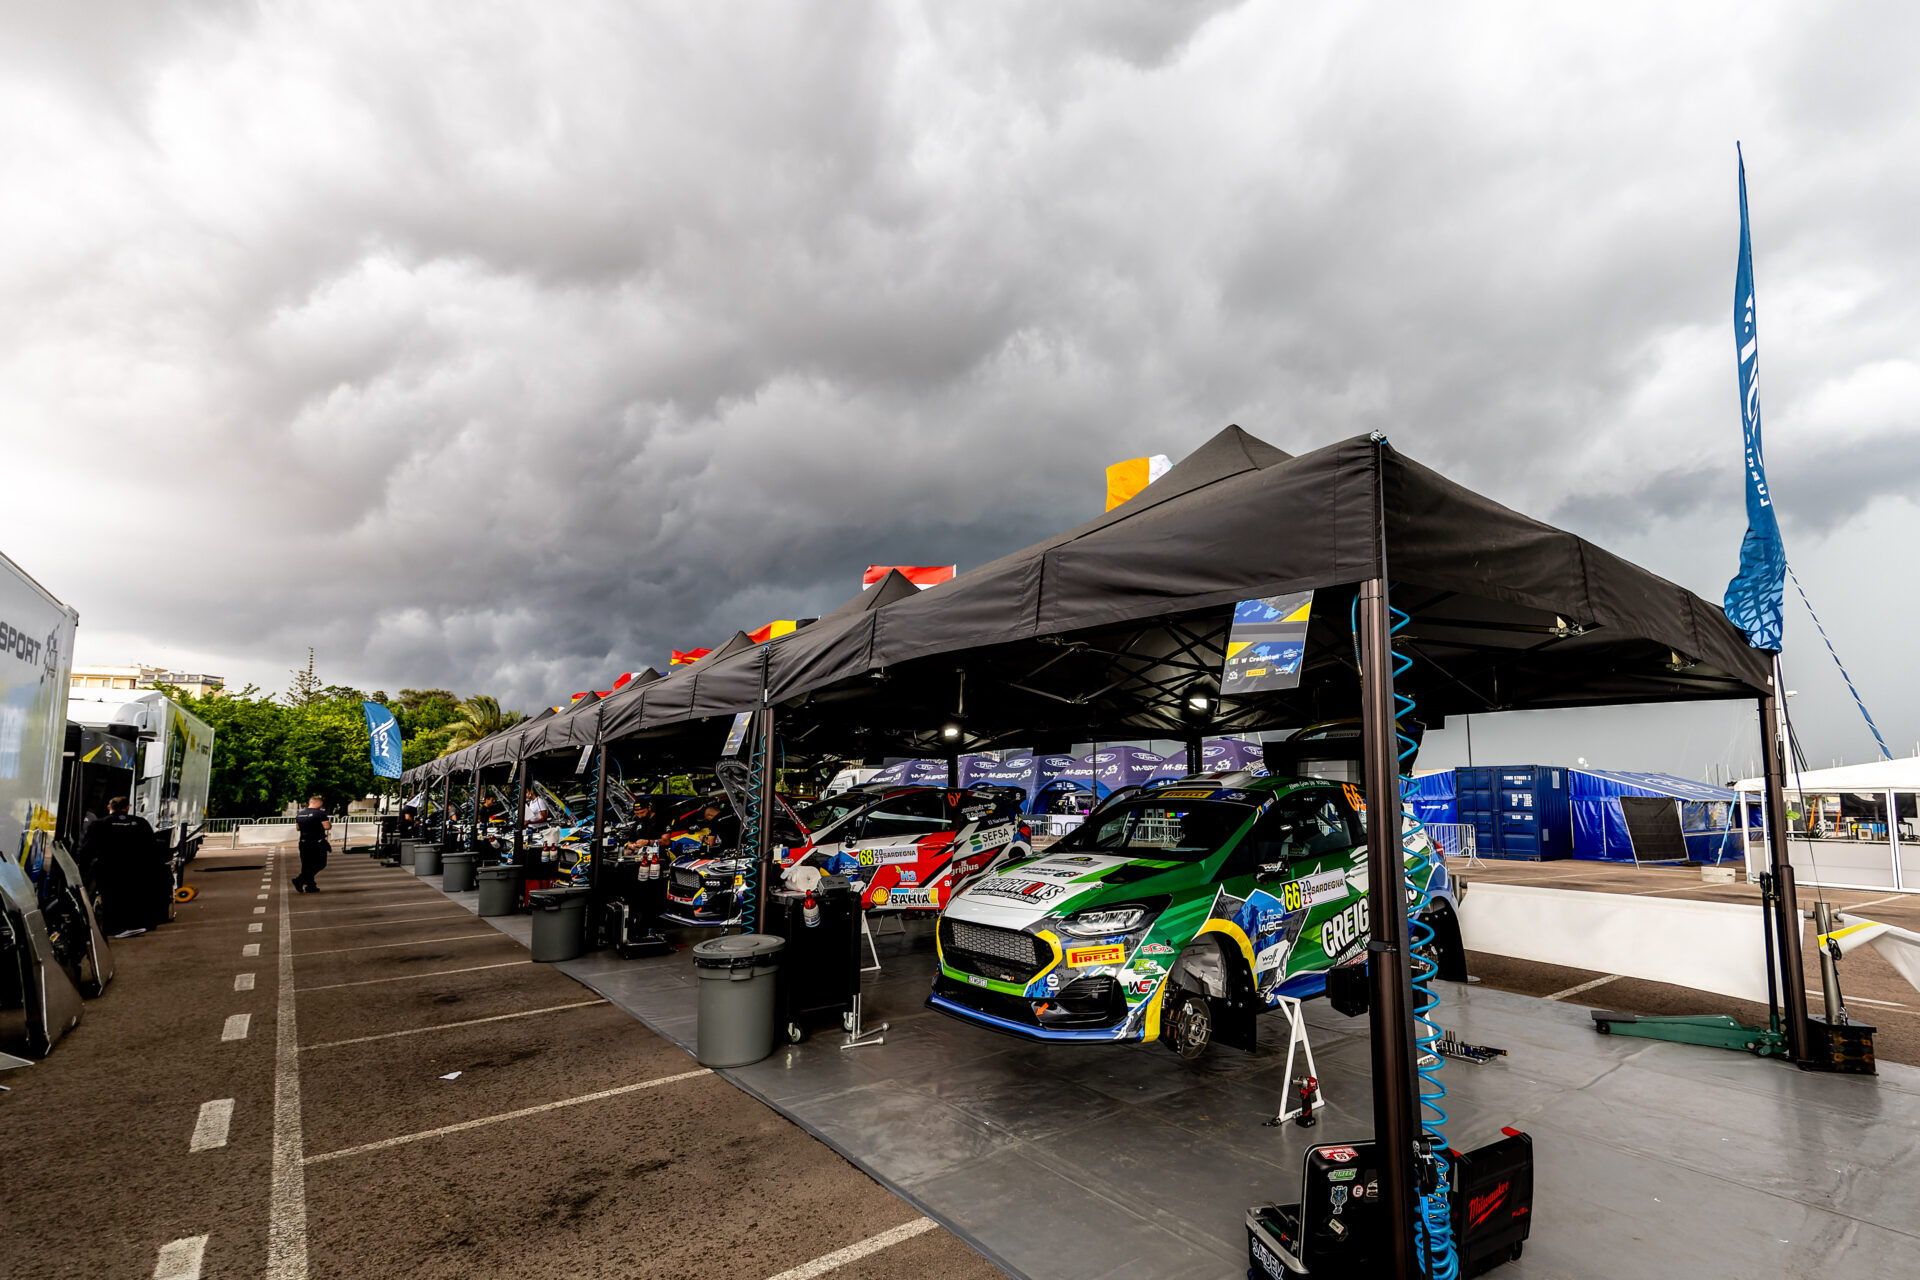 WRC, ράλι Ιταλίας, τα Fiesta Rally3 σε παράταξη